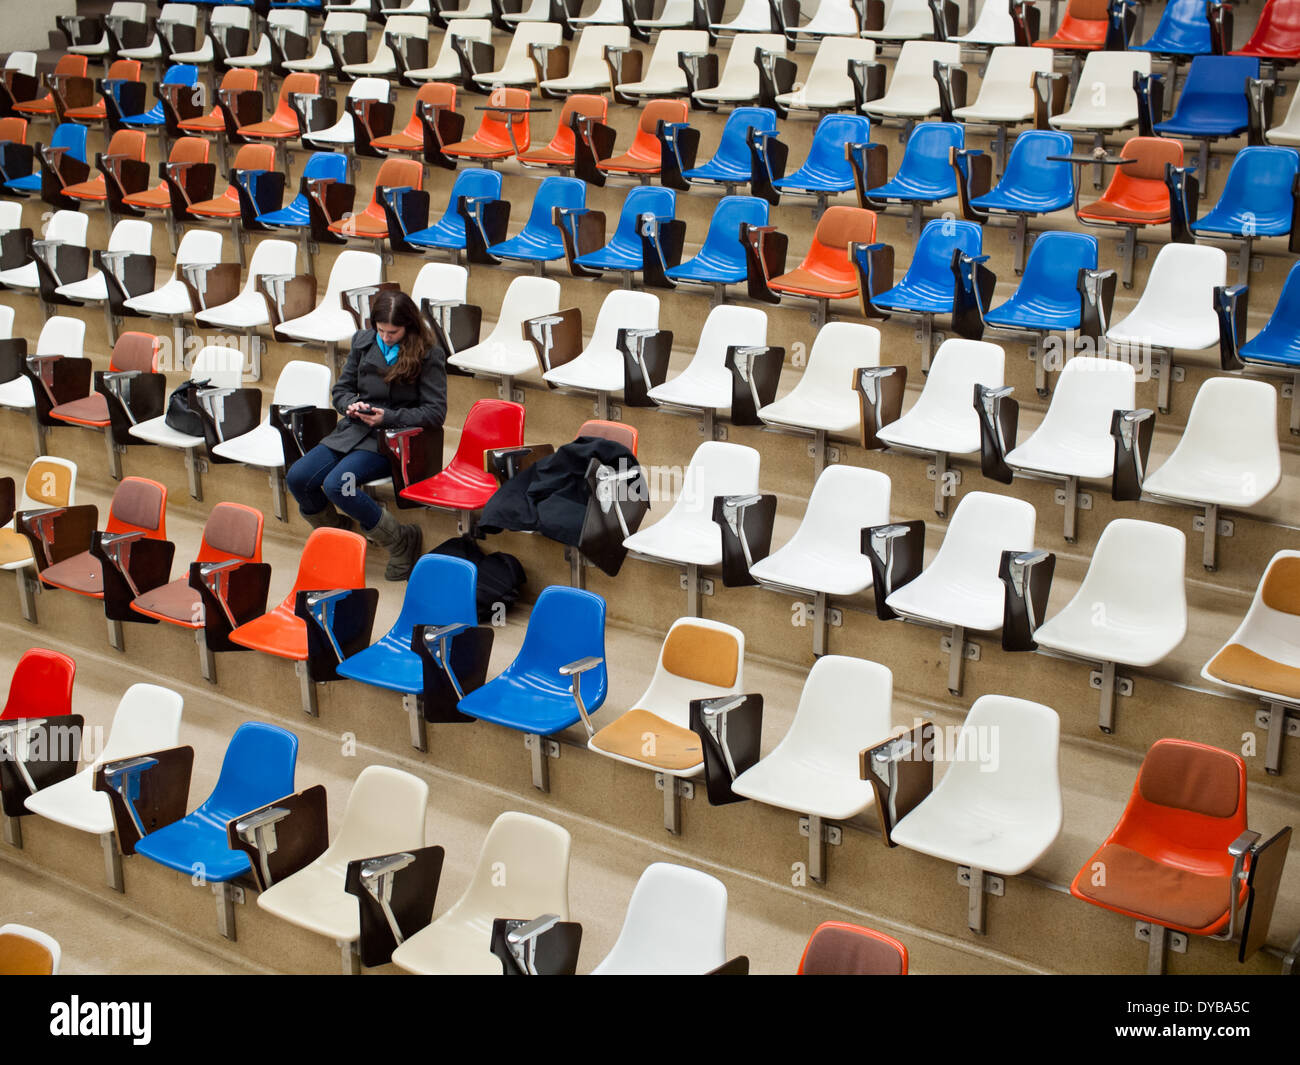 Une jolie brunette, étudiant de l'université se trouve dans une salle de classe vide à l'Université de l'Alberta à Edmonton, Alberta, Canada. Banque D'Images